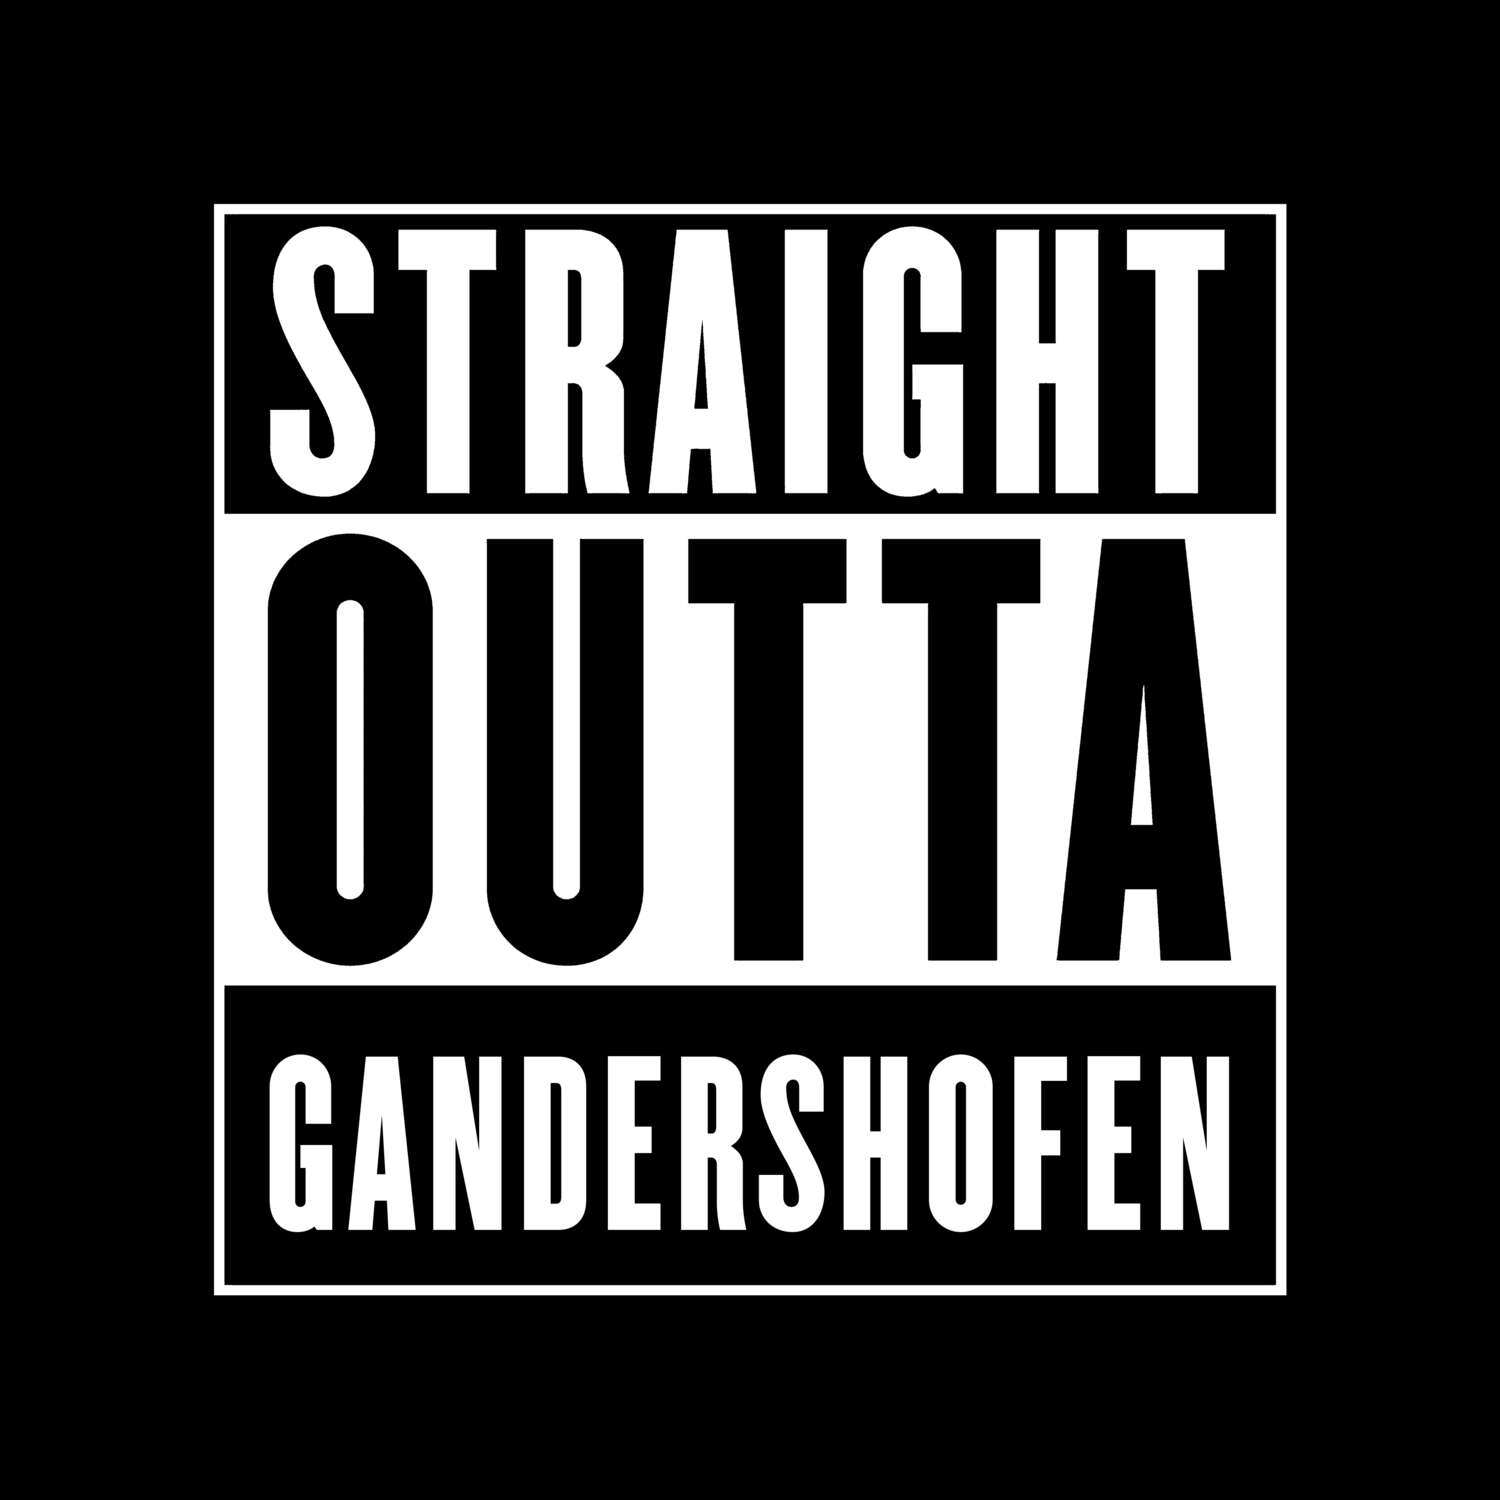 Gandershofen T-Shirt »Straight Outta«